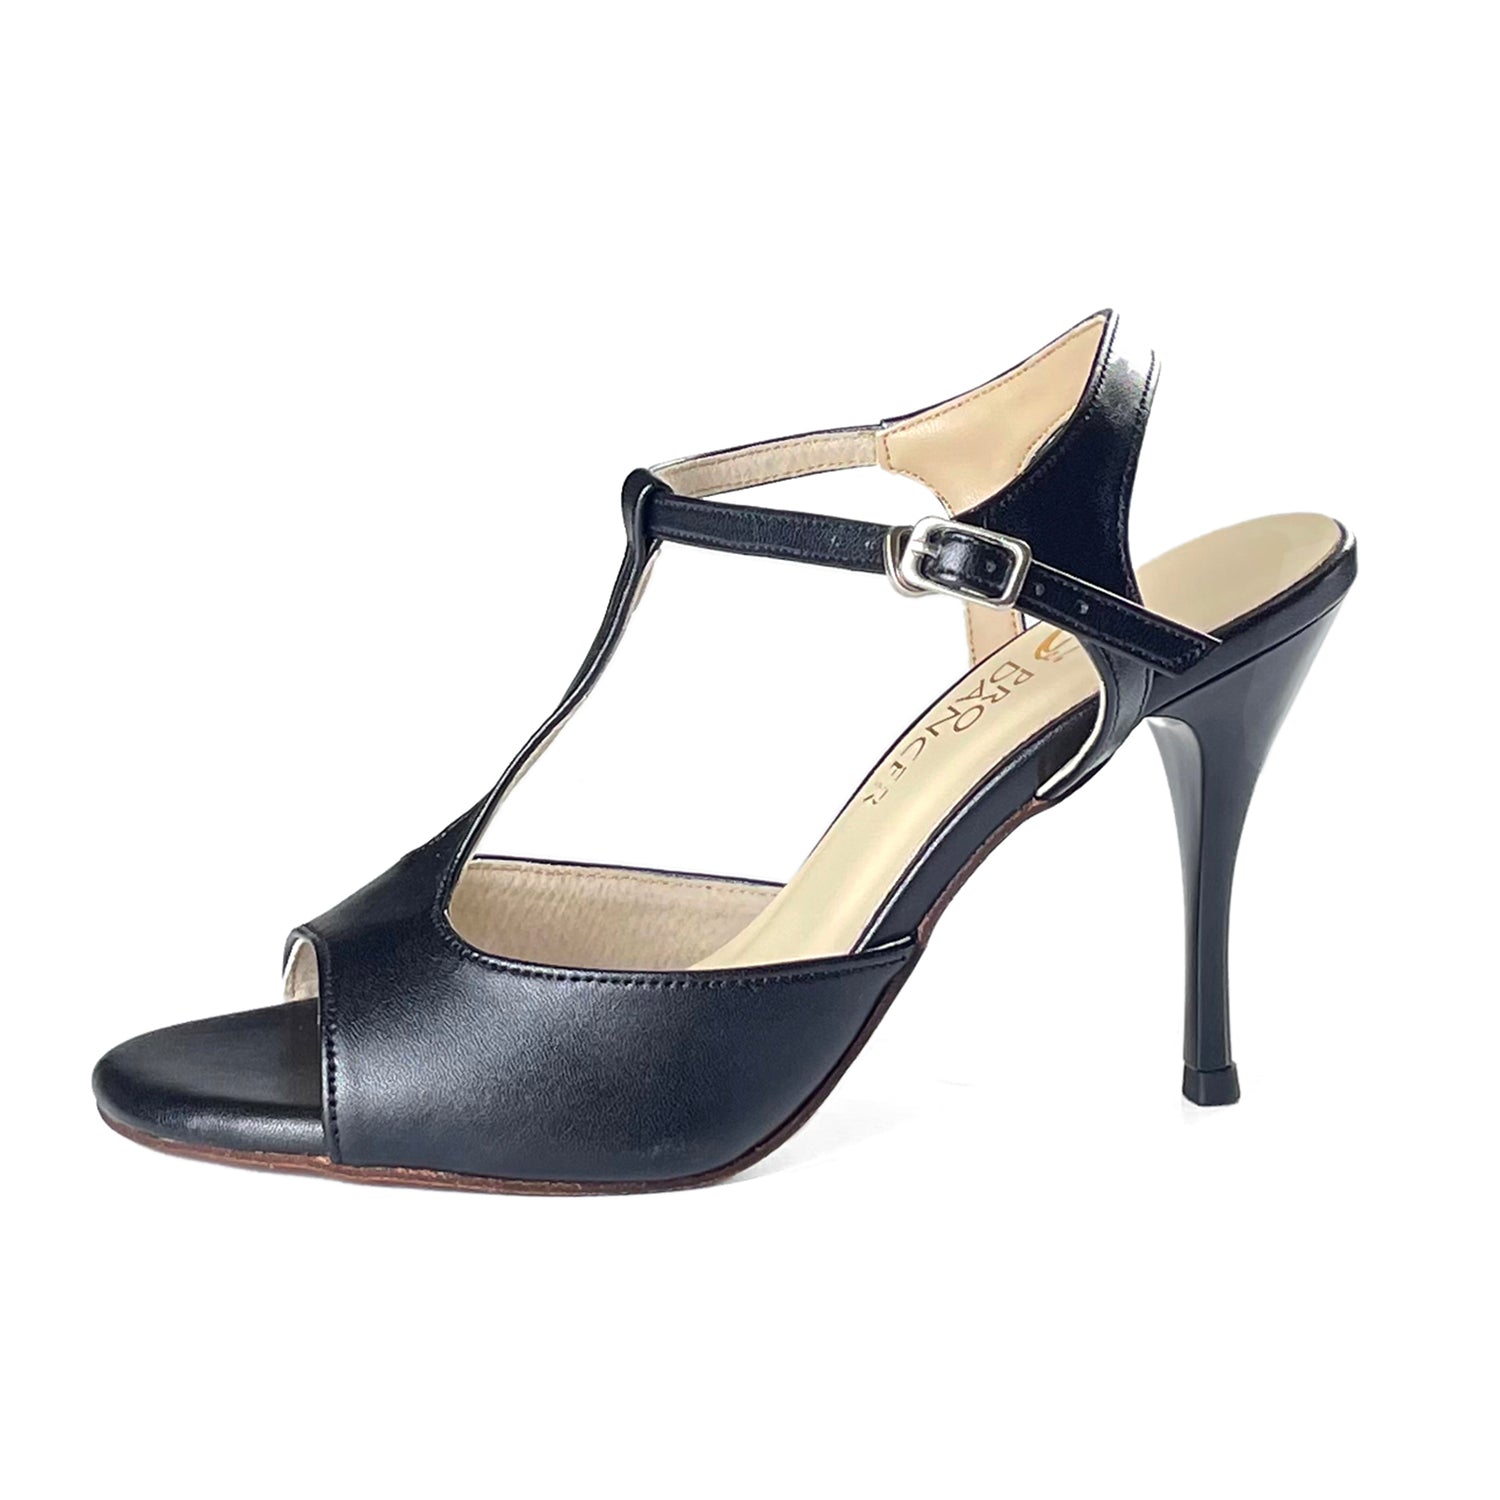 Pro Dancer Women's Tango Shoes high heel black leather sole dance sandals PD-9012D Argentina1